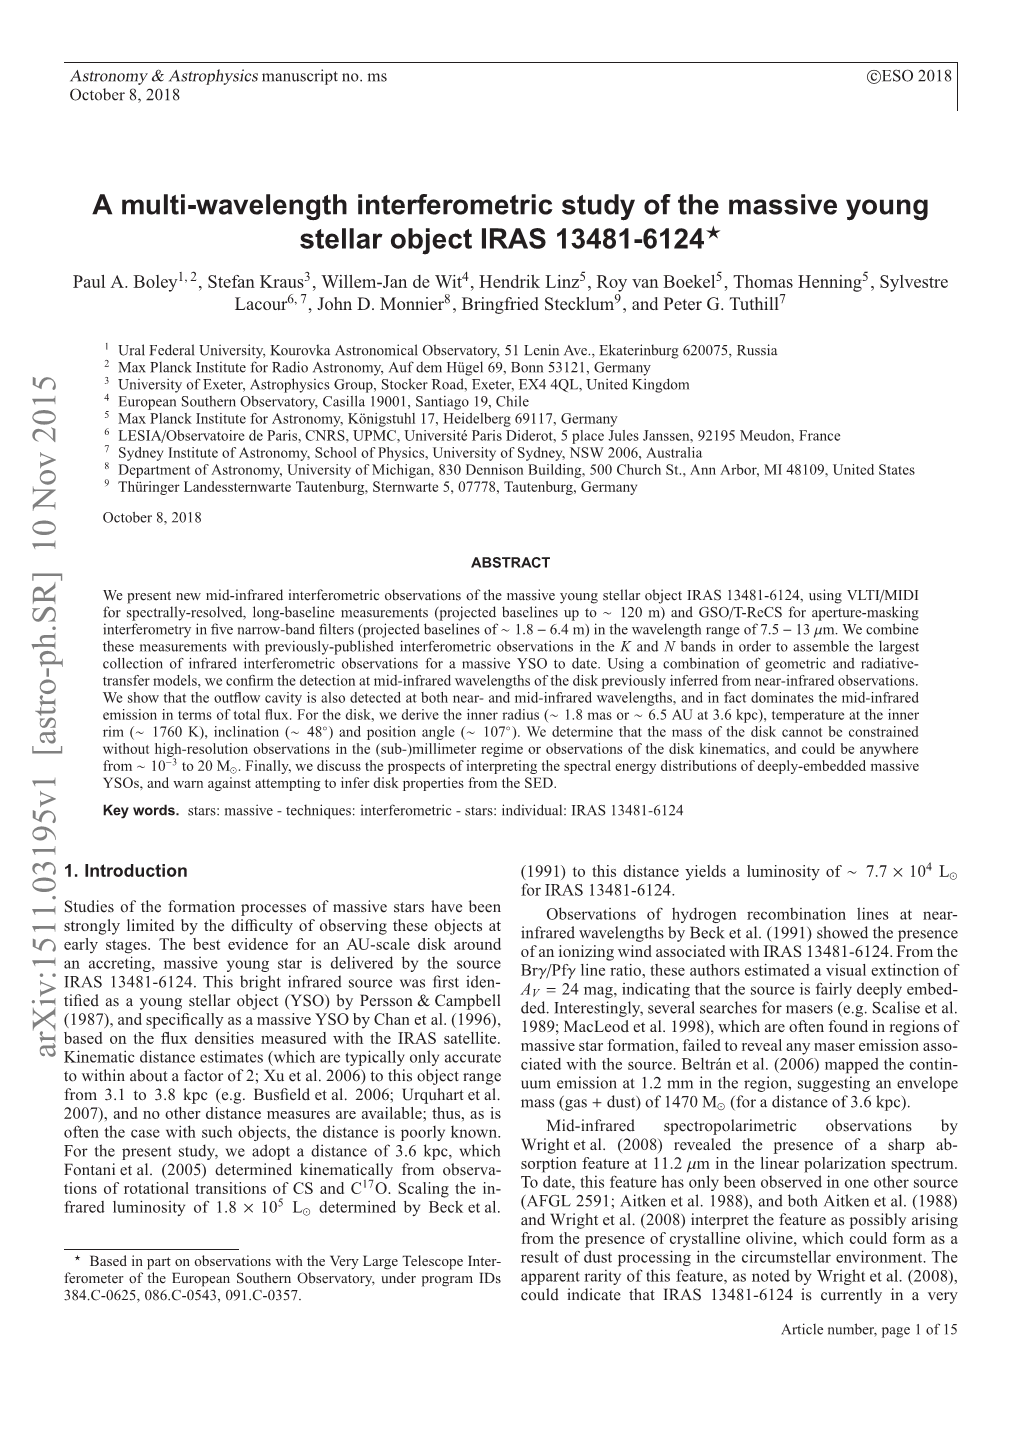 A Multi-Wavelength Interferometric Study of the Massive Young Stellar Object IRAS 13481-6124